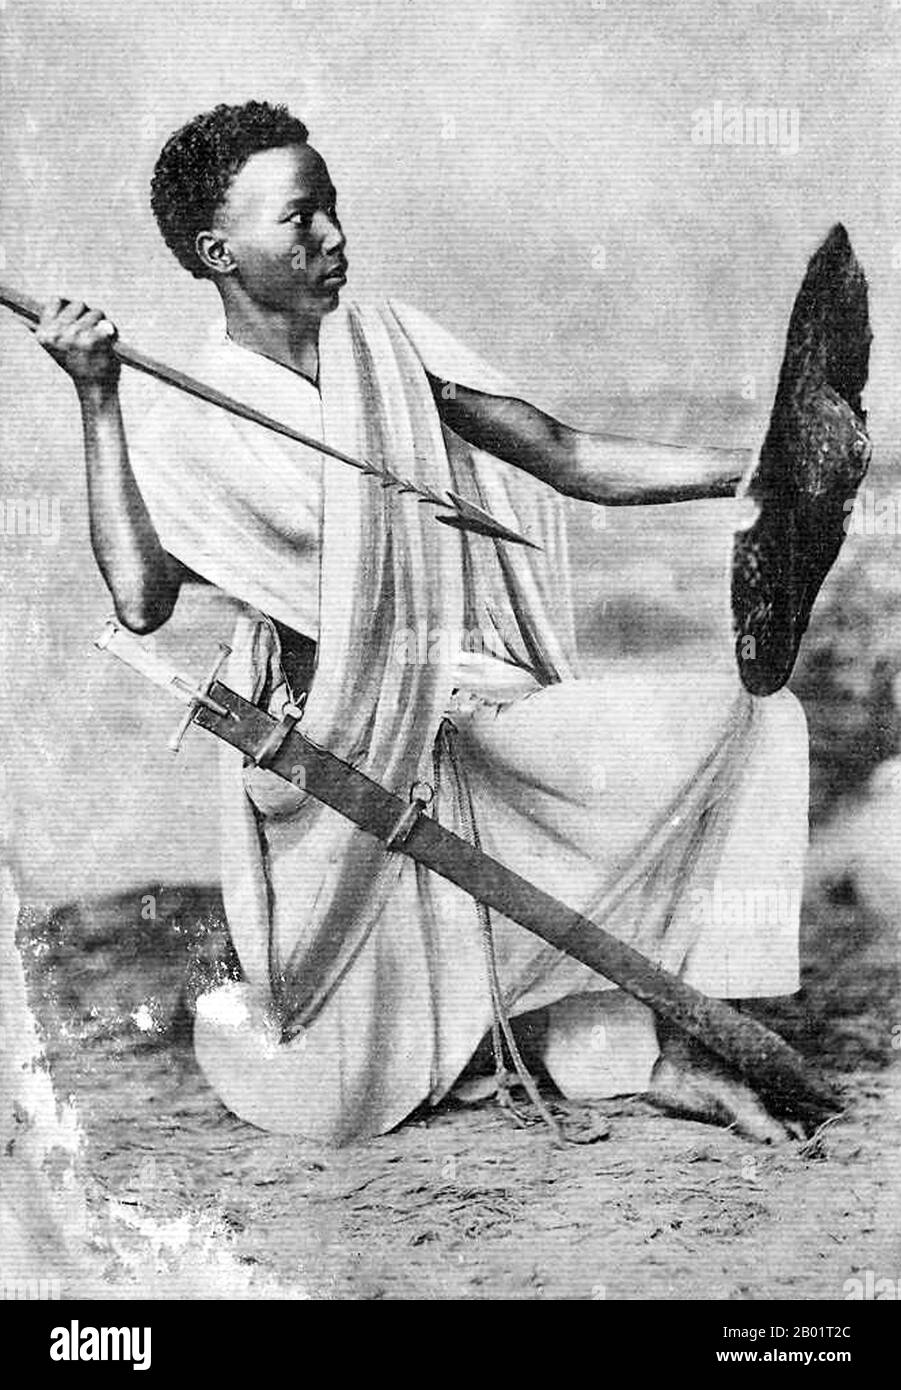 Mali : un 'jeune guerrier soudanais' (de l'ancien Soudan français), début du 20e siècle. Le Soudan français était une colonie de l'Afrique occidentale française qui a eu deux périodes d'existence distinctes, d'abord de 1890 à 1899, puis de 1920 à 1960, lorsque le territoire est devenu la nation indépendante du Mali. Banque D'Images